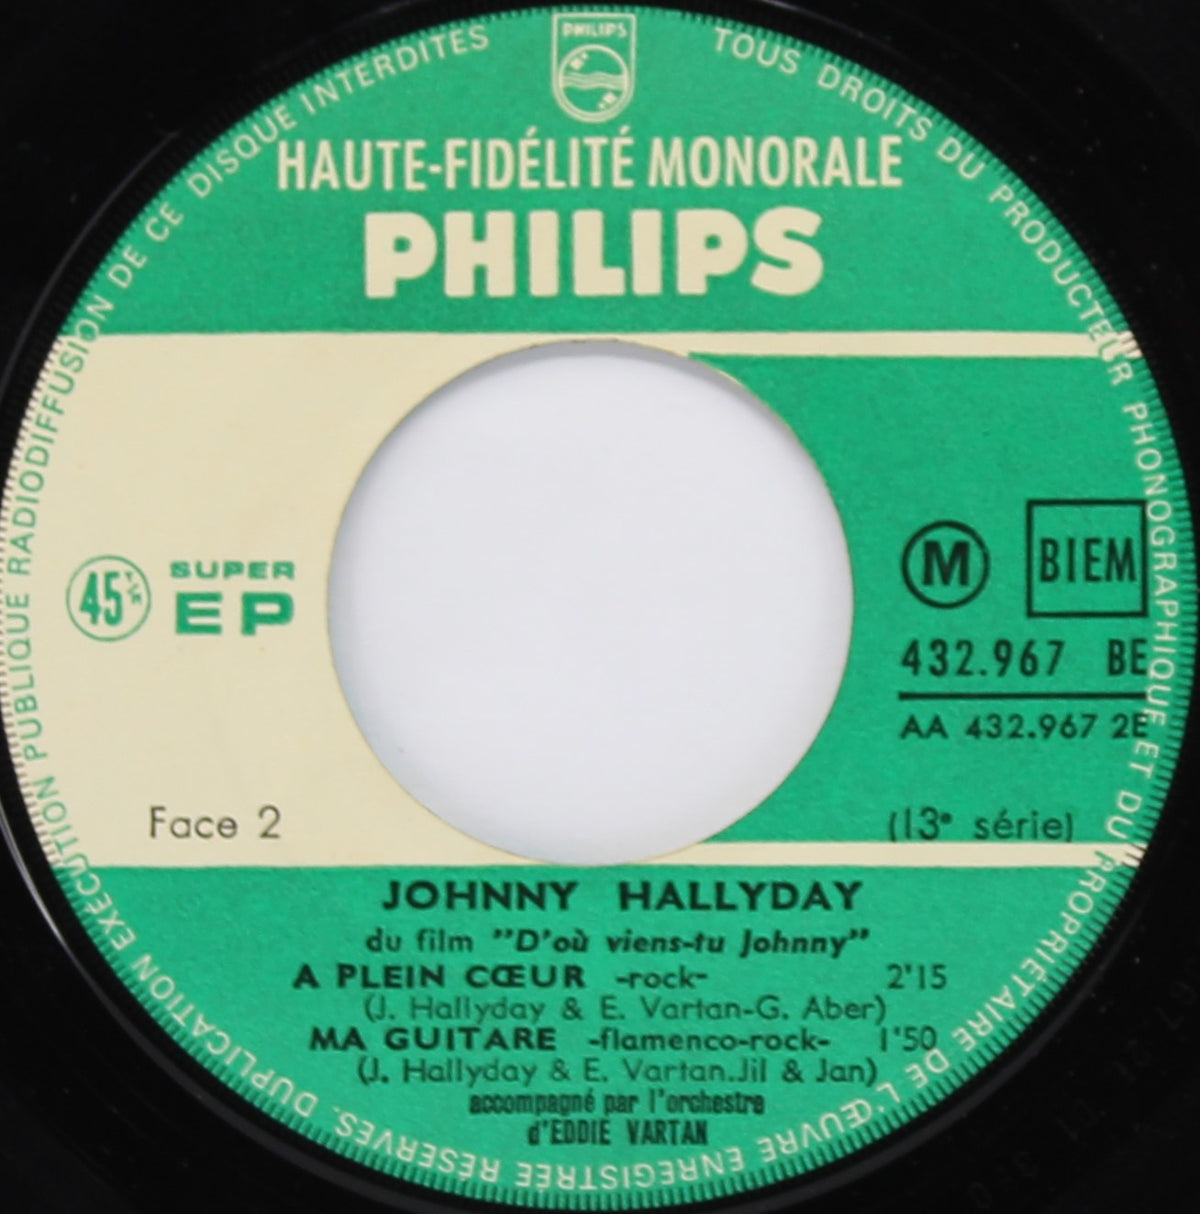 Johnny Hallyday – Pour Moi La Vie Va Commencer, Vinyl, 7&quot;, 45 RPM, EP, Mono, France 1963